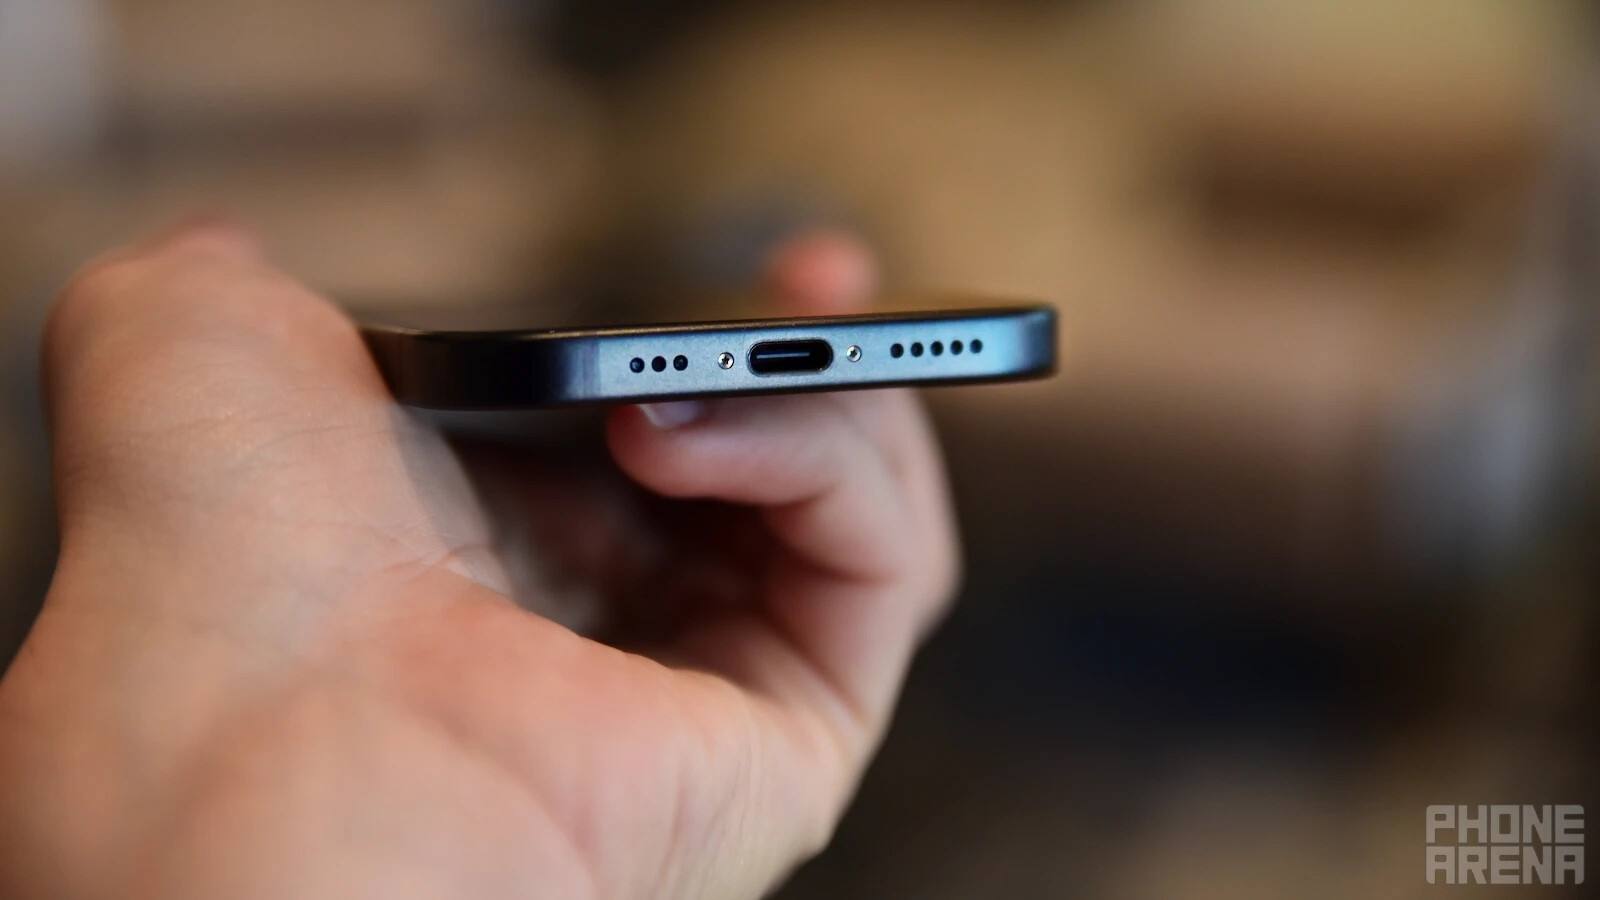 Android sollte auch Apples innovativen neuen USB-Anschluss stehlen!  Oh, warte... - Apple bringt keine Innovationen hervor?  Denk nochmal!  Android-Nutzer werden auf diese Funktionen des iPhone 15 neidisch sein